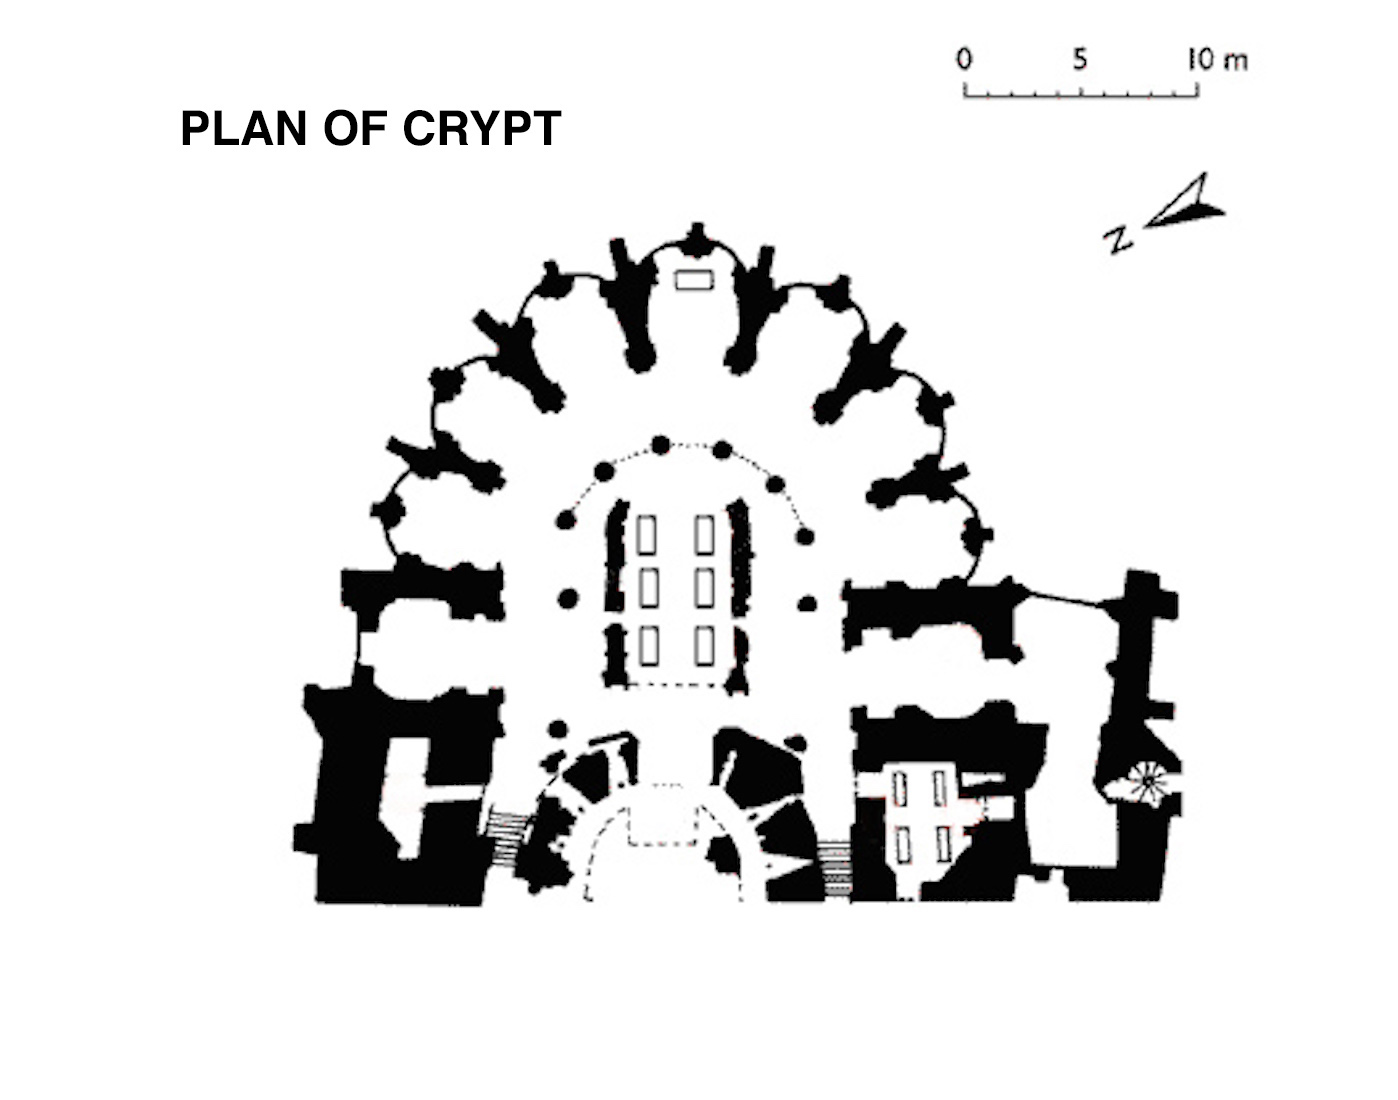 PlanofCrypt